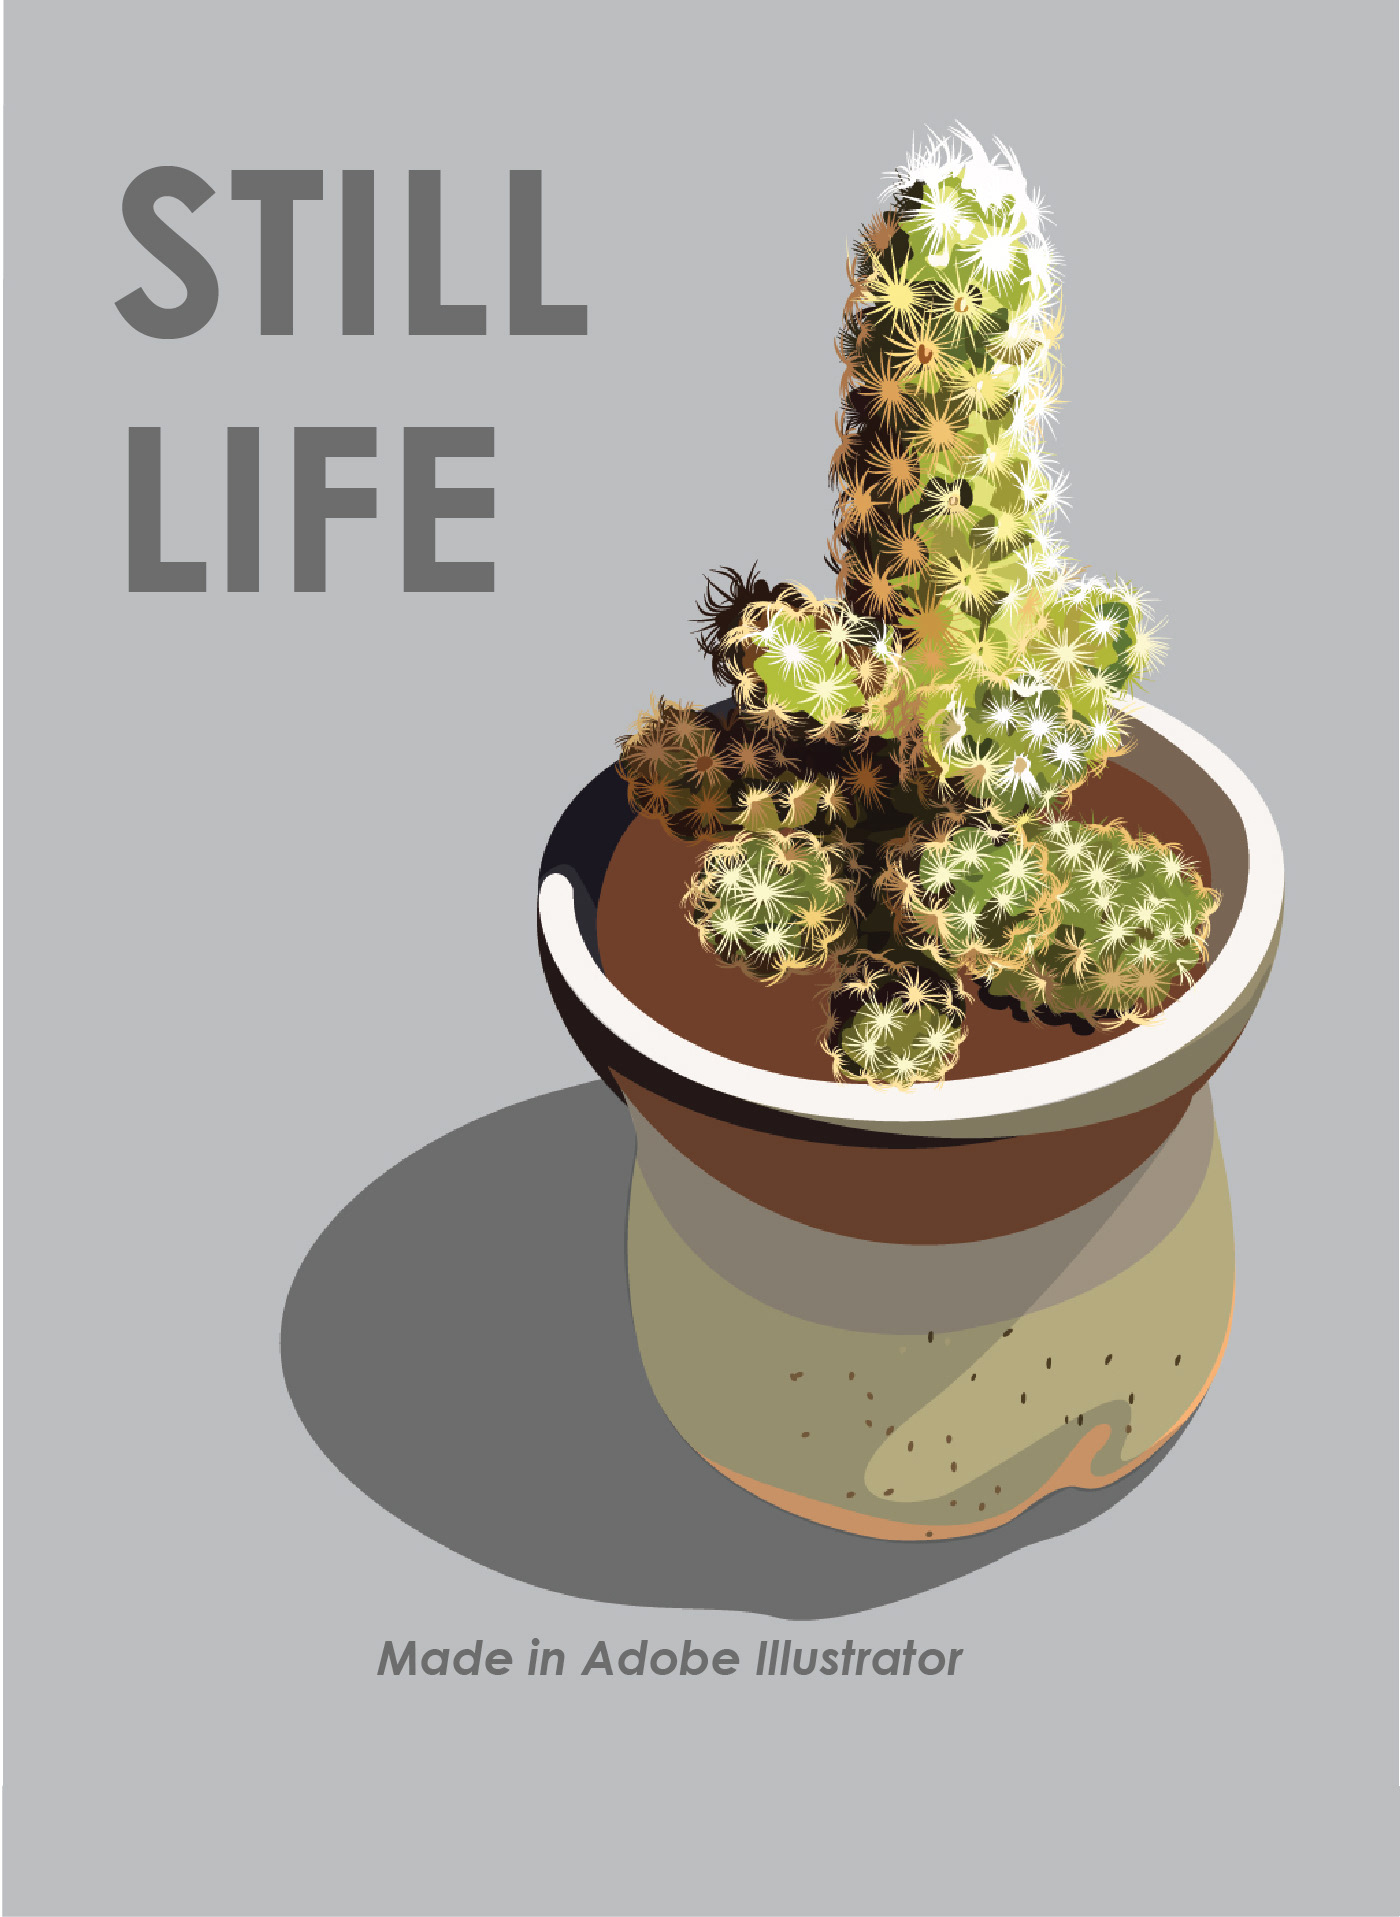 cactus art Illustrator still life Drawing 